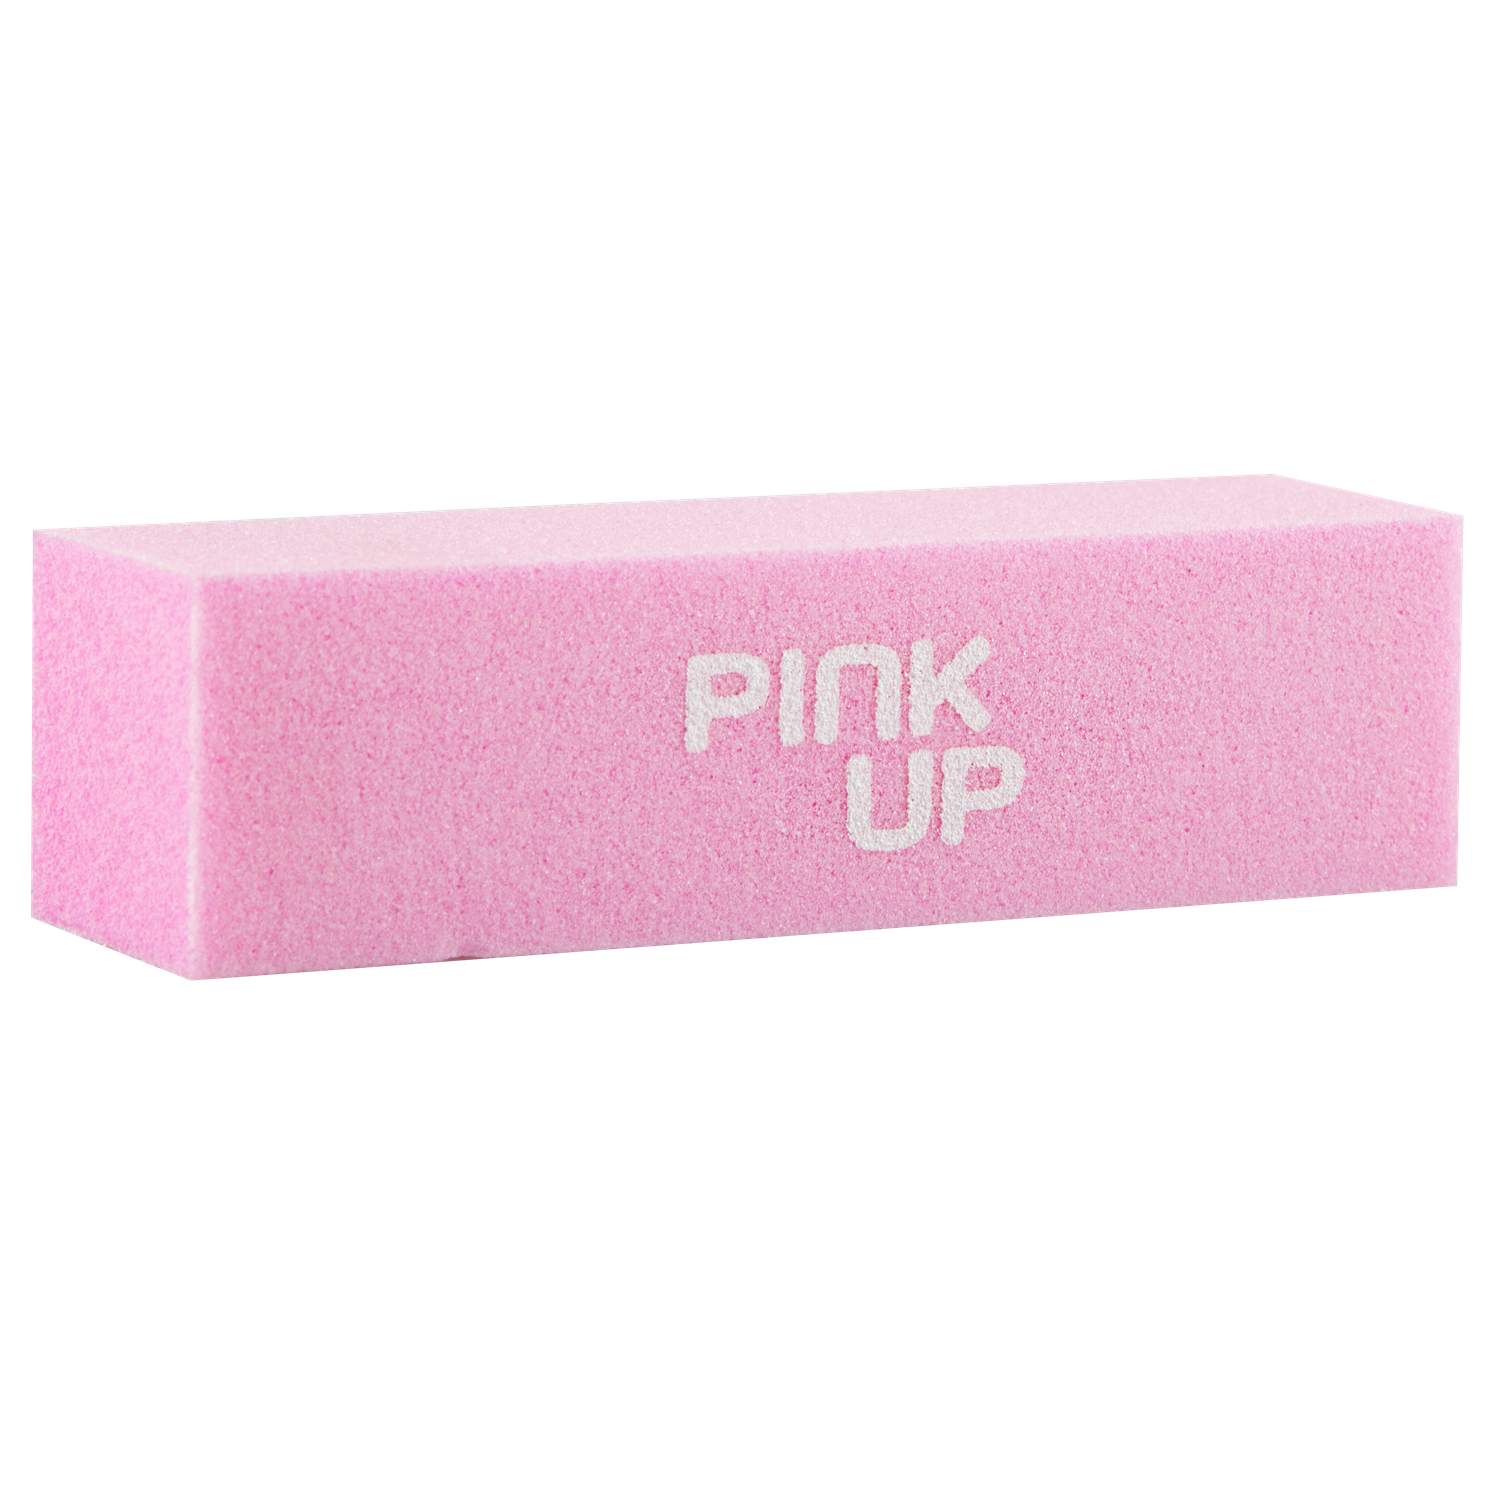 Блок полировочный Pink Up 150 грит - фото 2